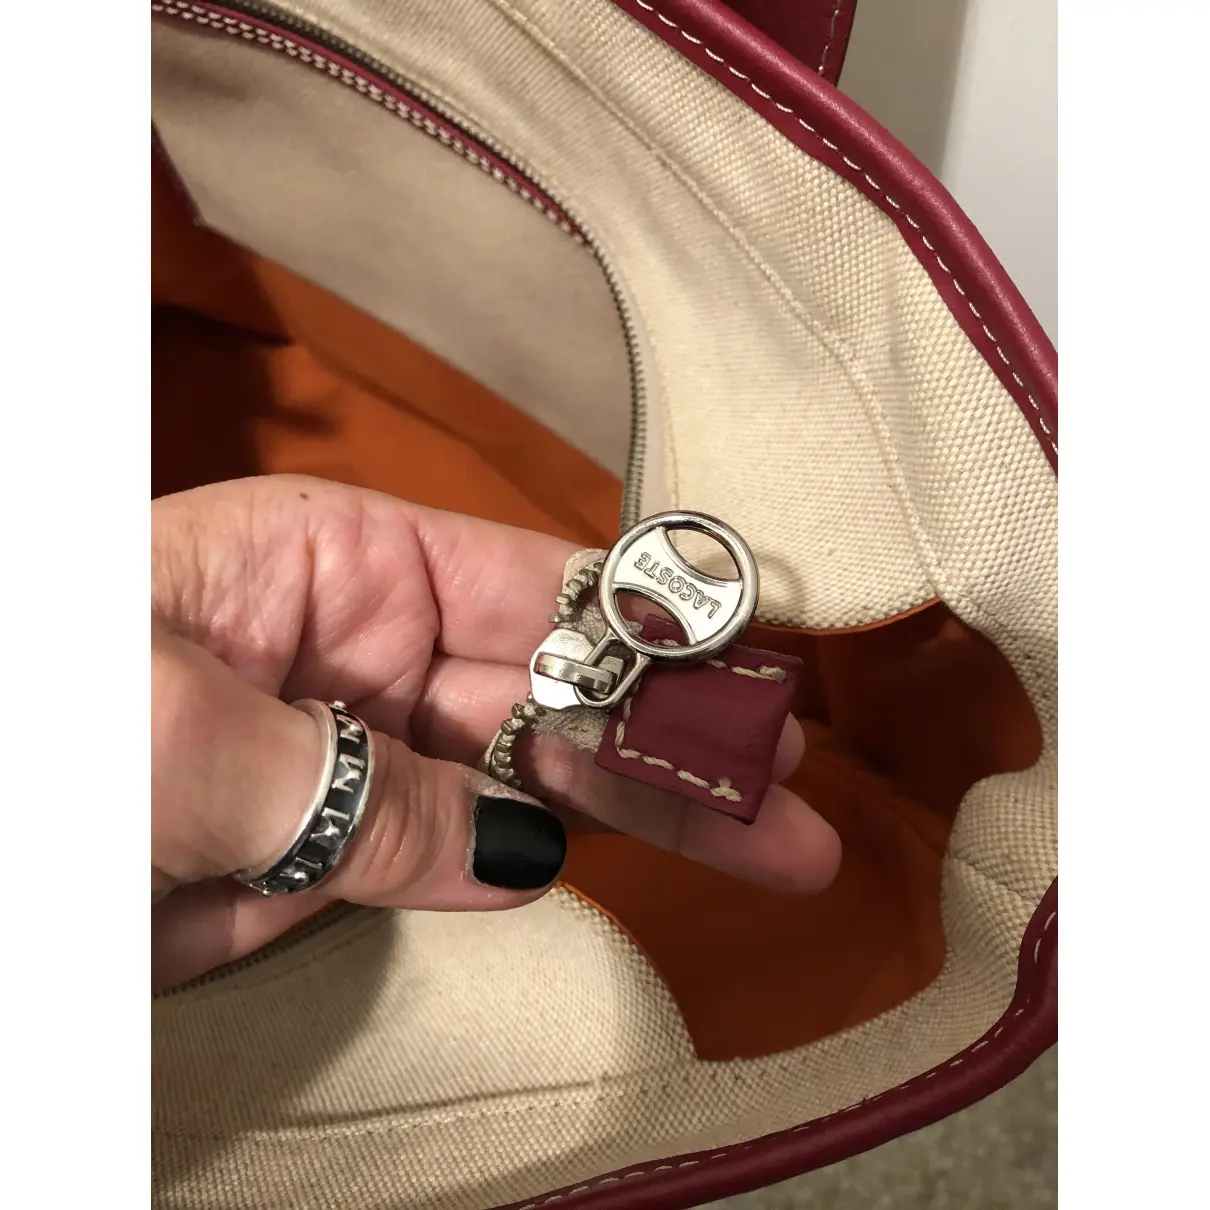 Cloth handbag Lacoste